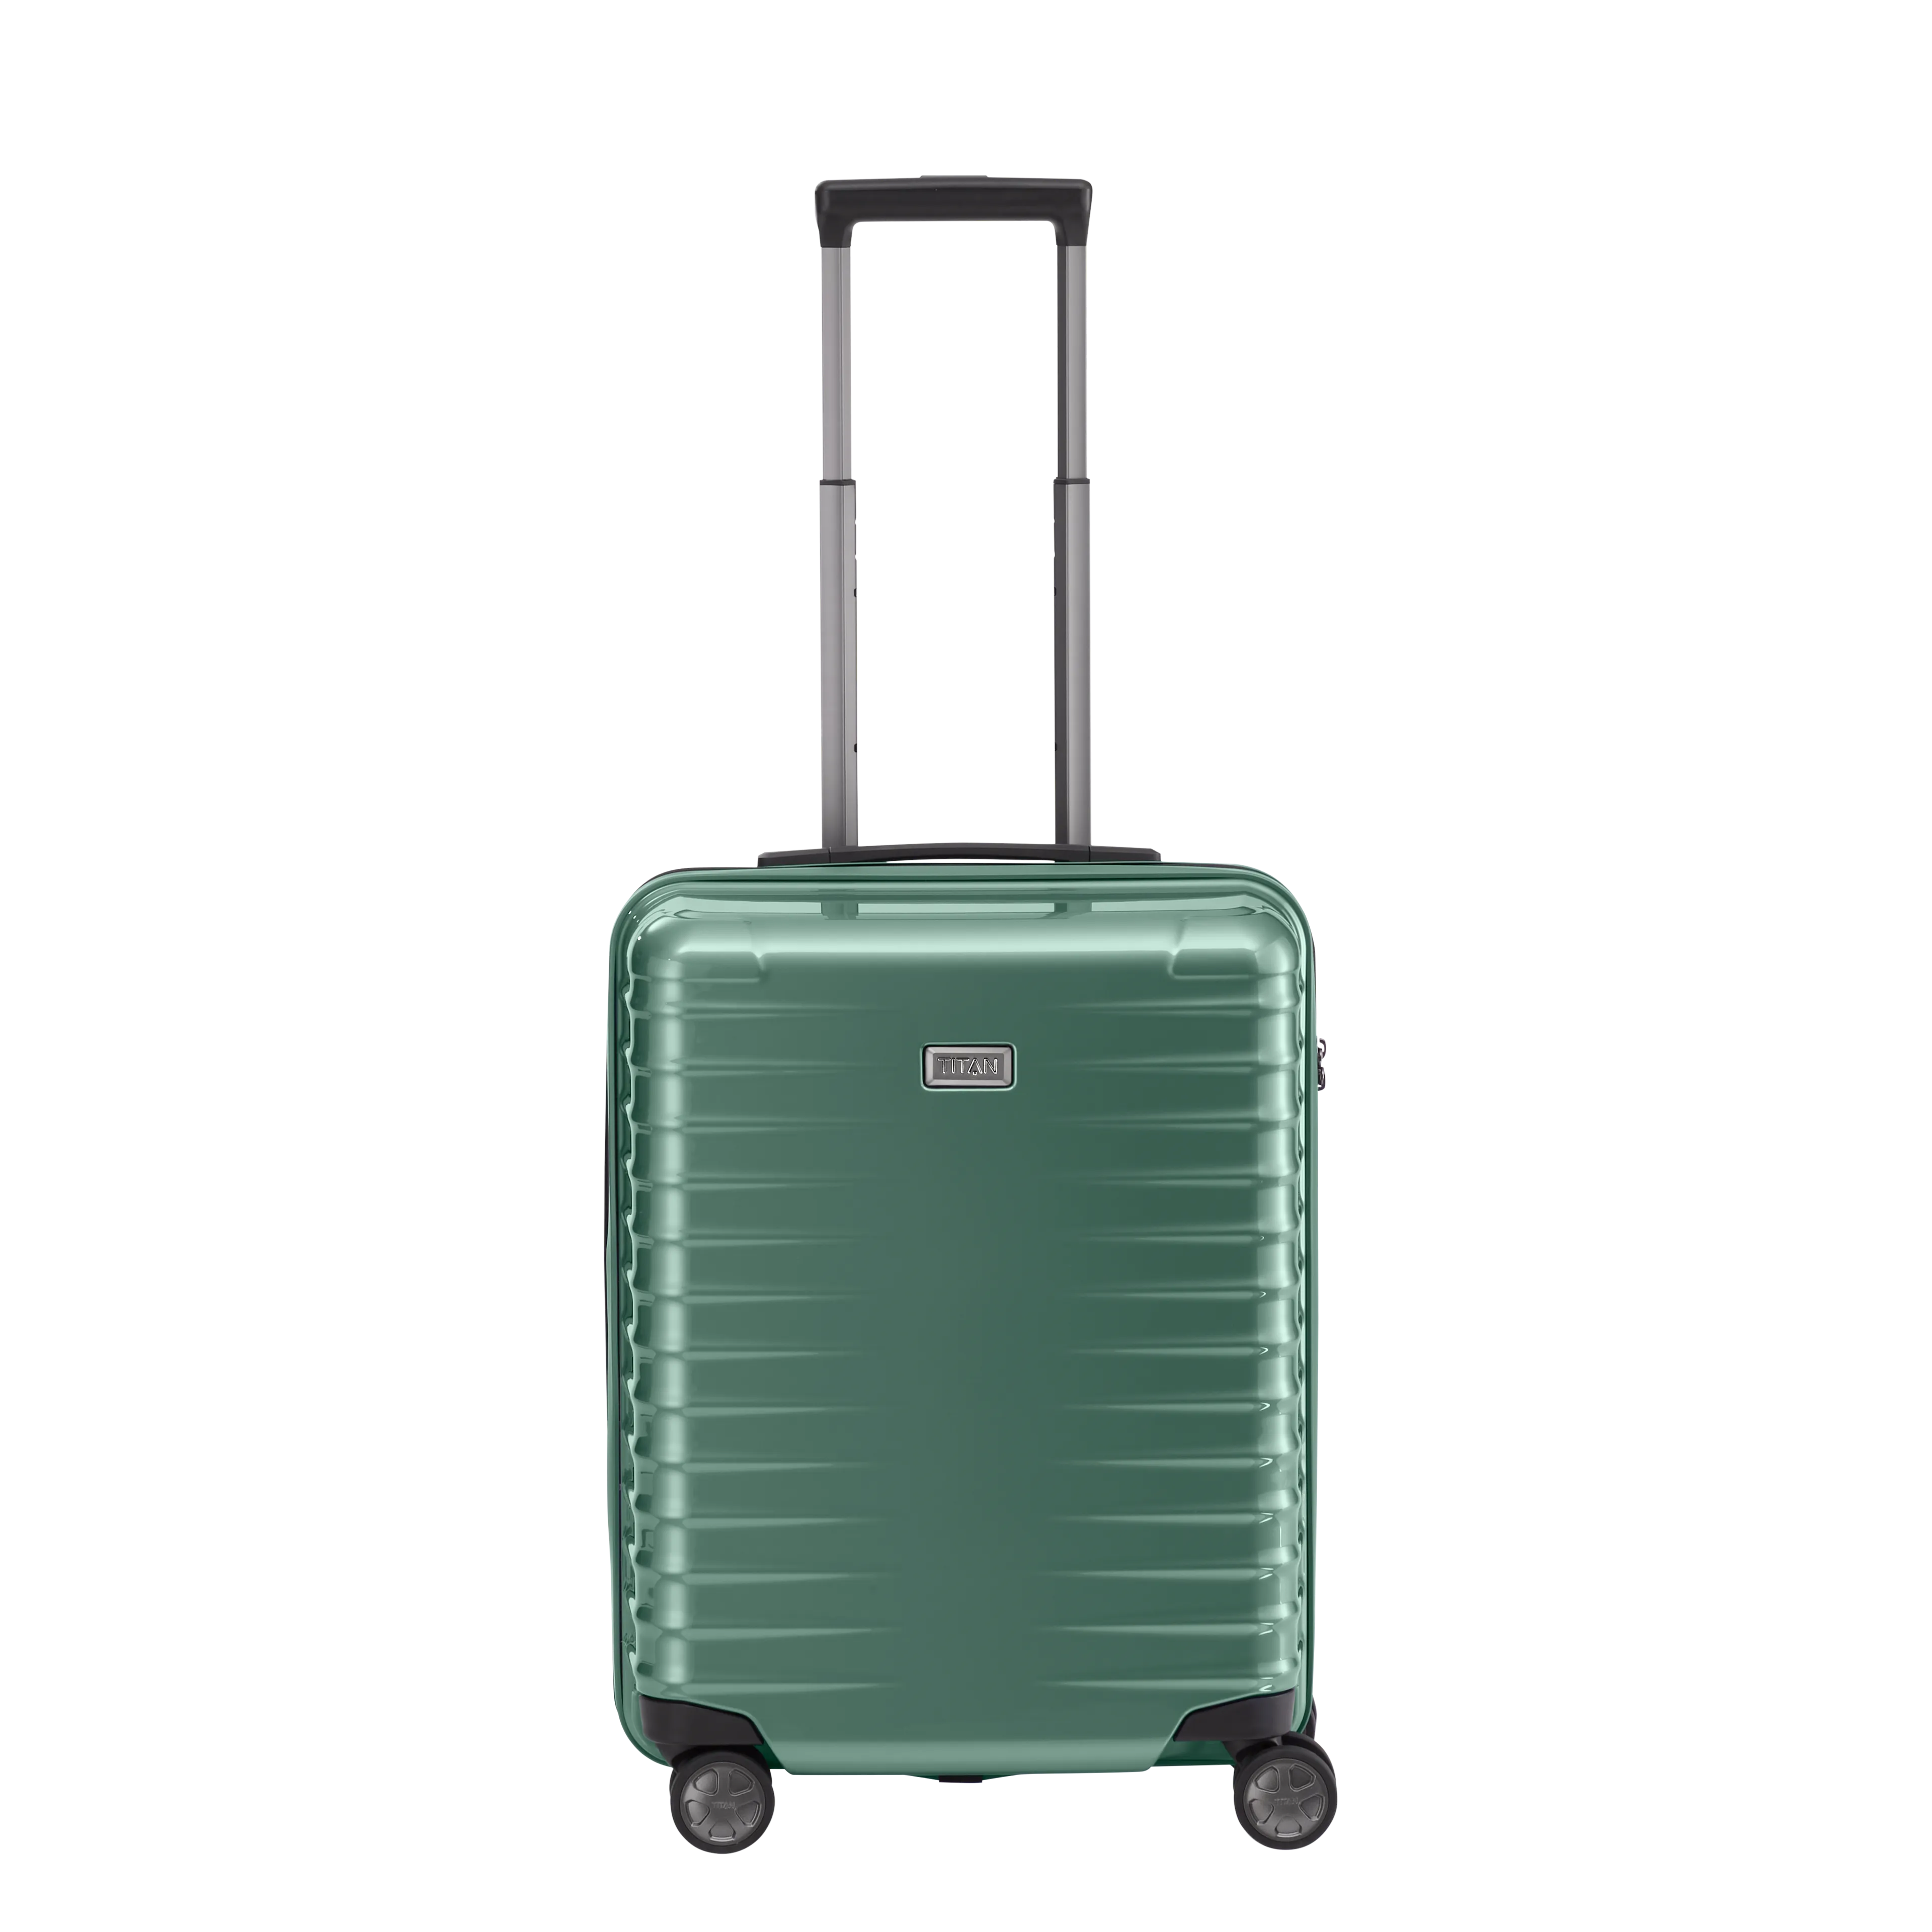 Ein TITAN Koffer der Serie LITRON Frontansicht in traubengrün Größe S 55cm